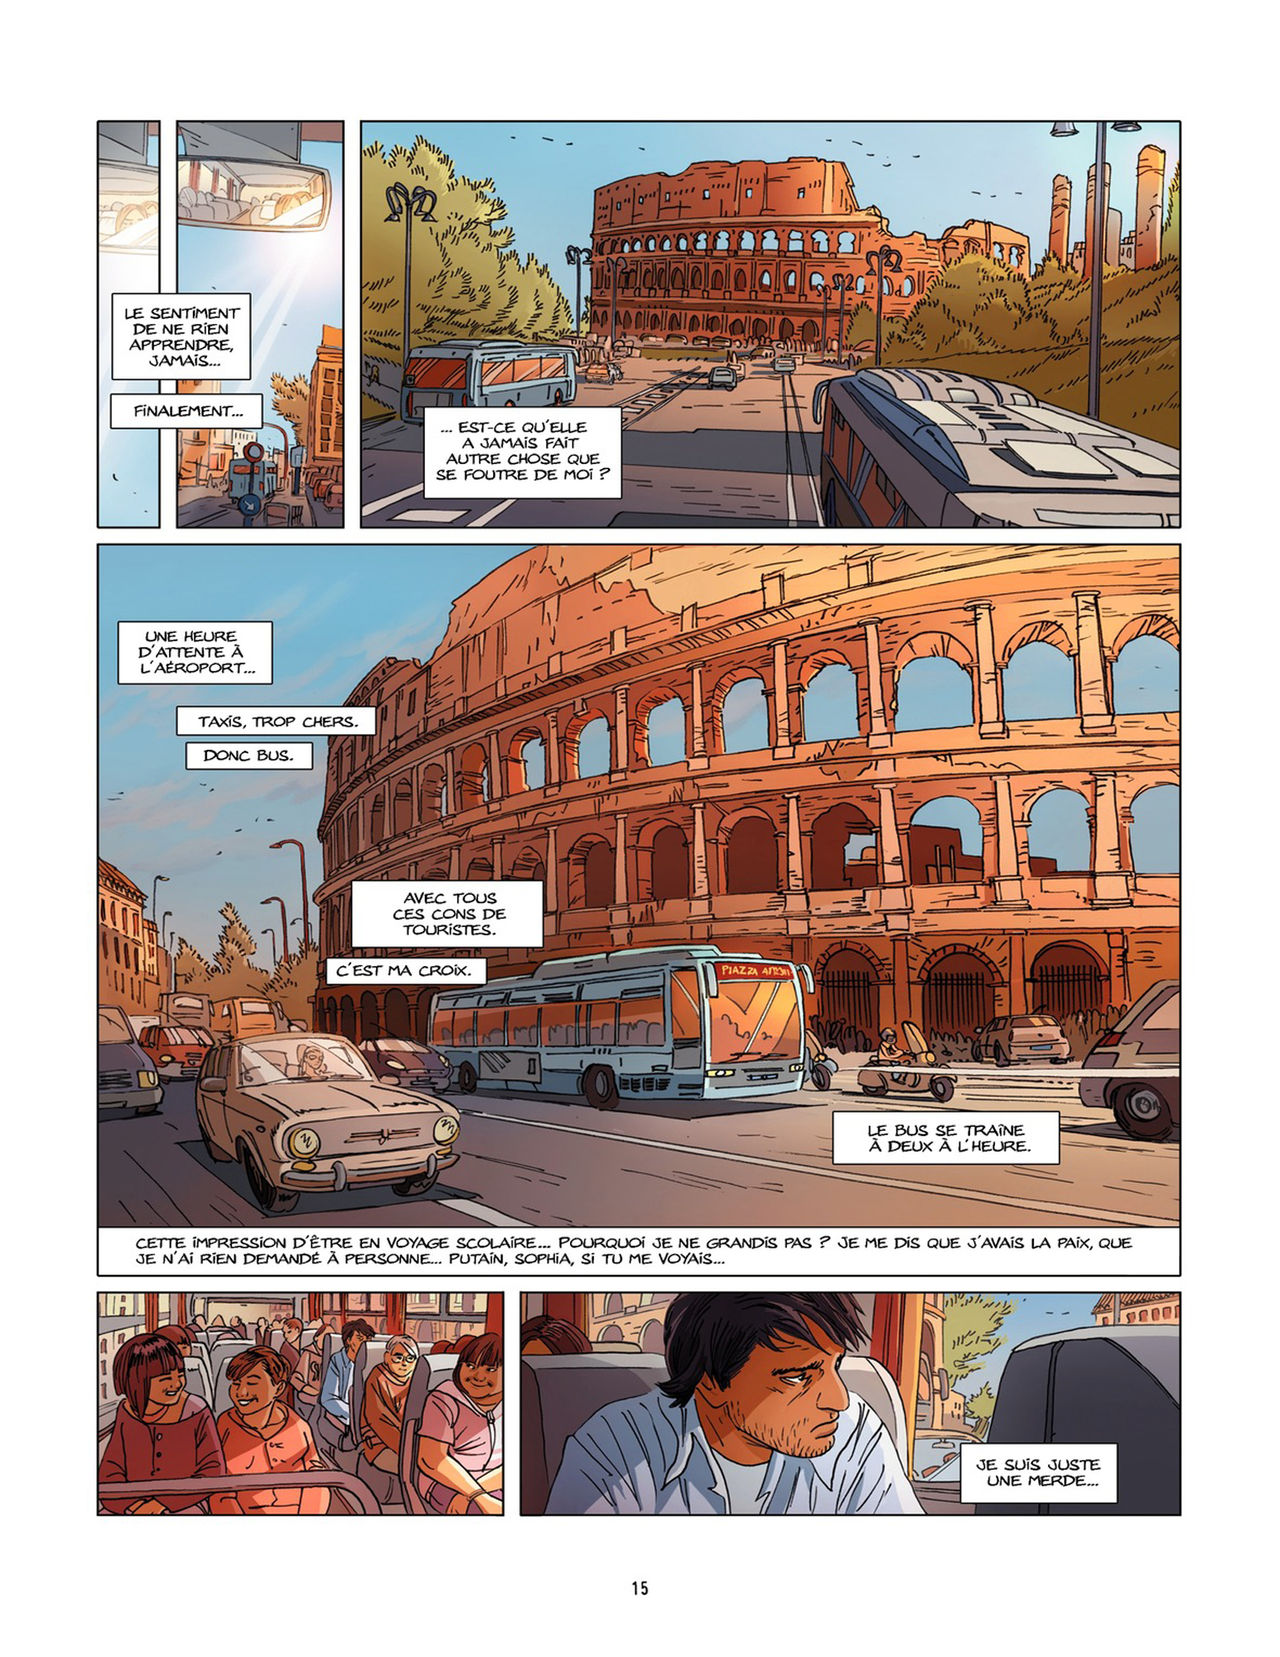 Une nuit à Rome - Tome 2 numero d'image 14